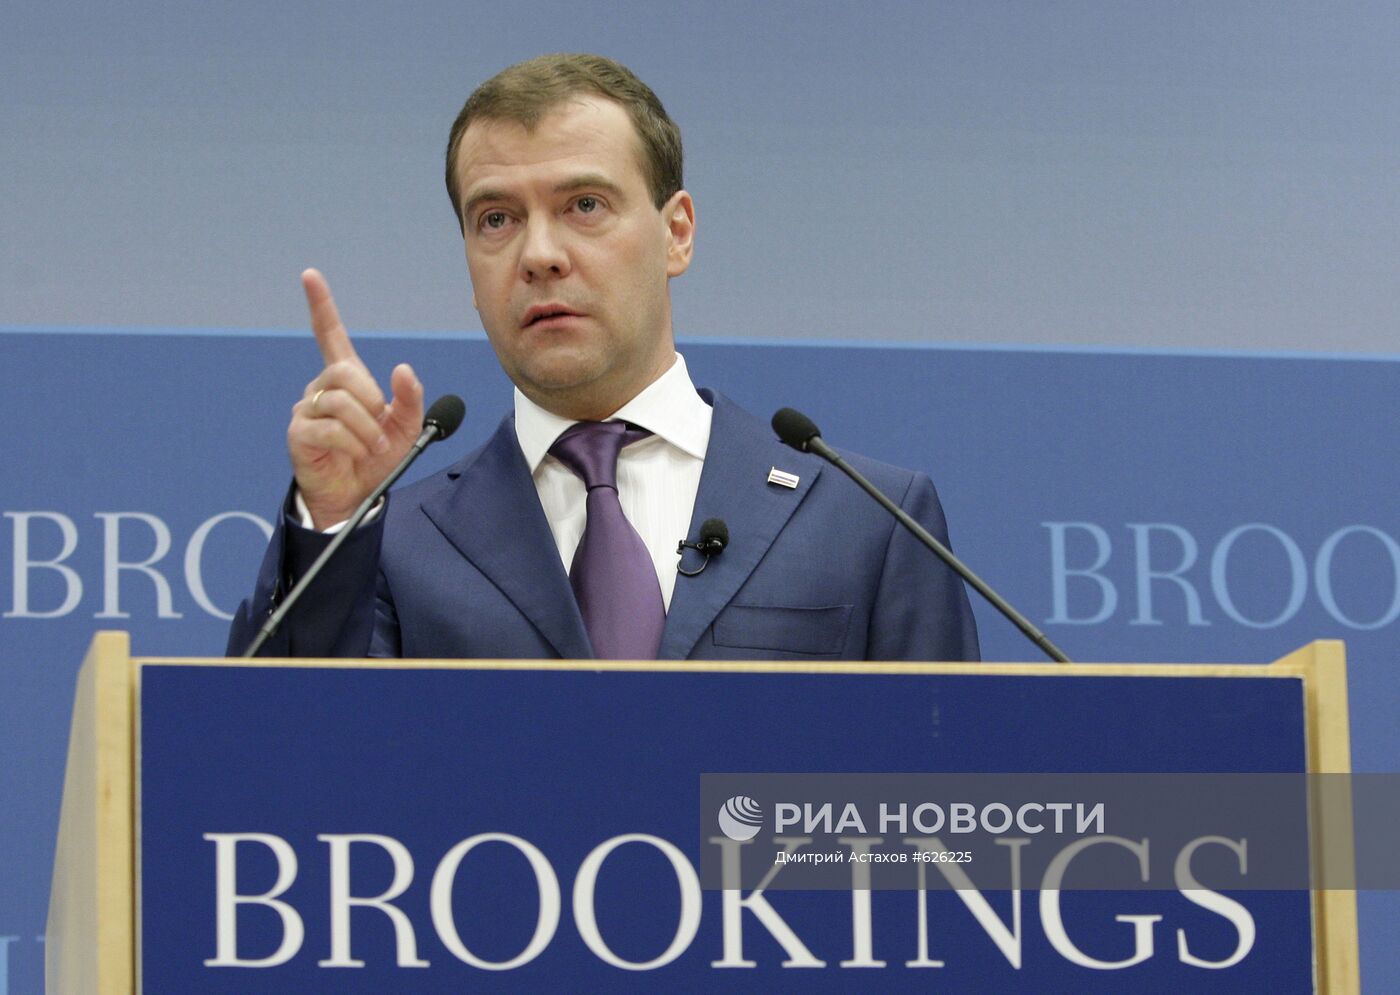 Выступление Дмитрия Медведева в Брукингском институте